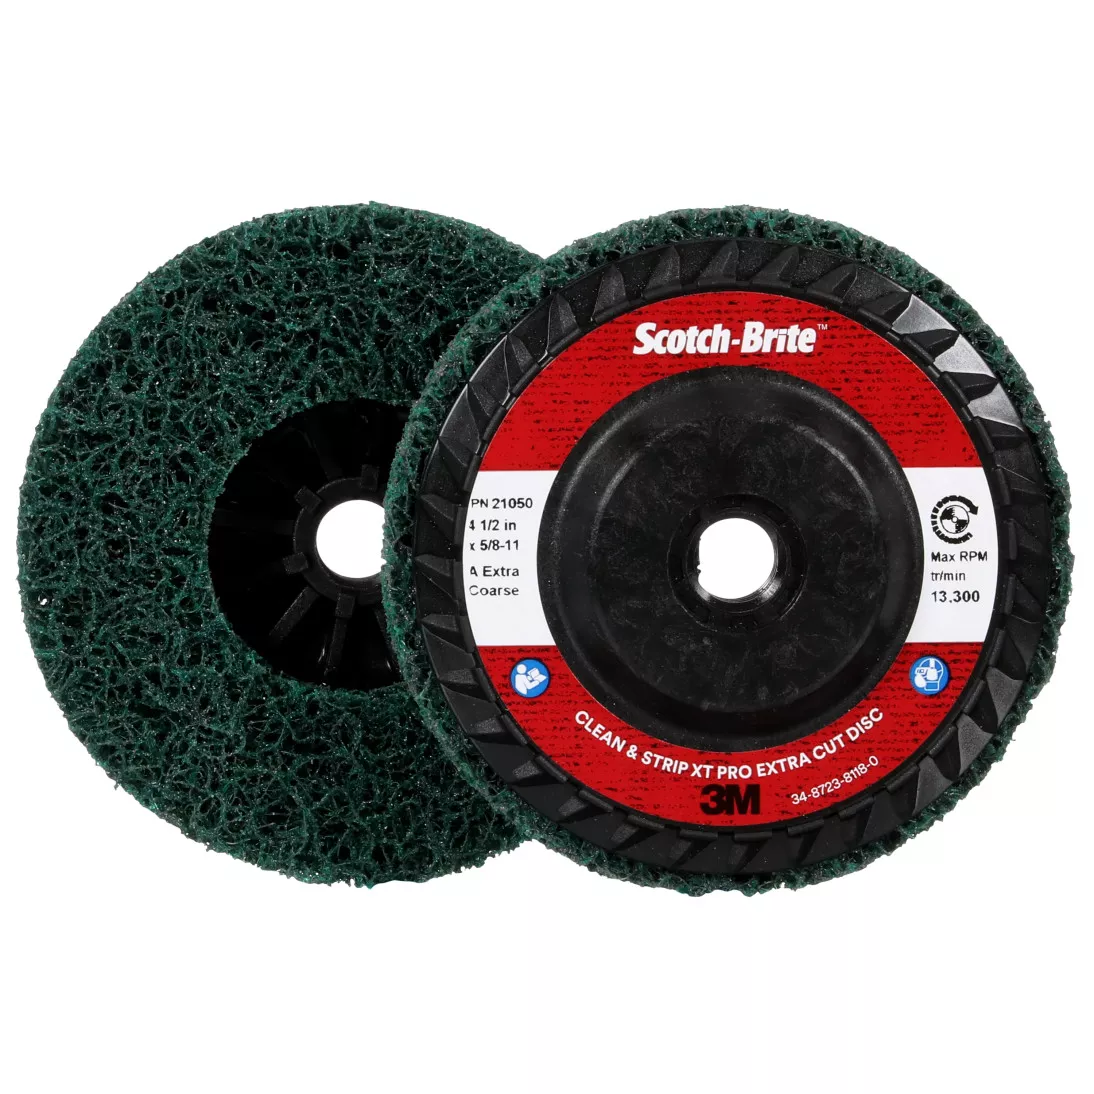 Scotch-Brite™ Clean and Strip XT Pro Extra Cut Disc, XC-DC, A/O Extra
Coarse, Green, 4-1/2 in x 5/8